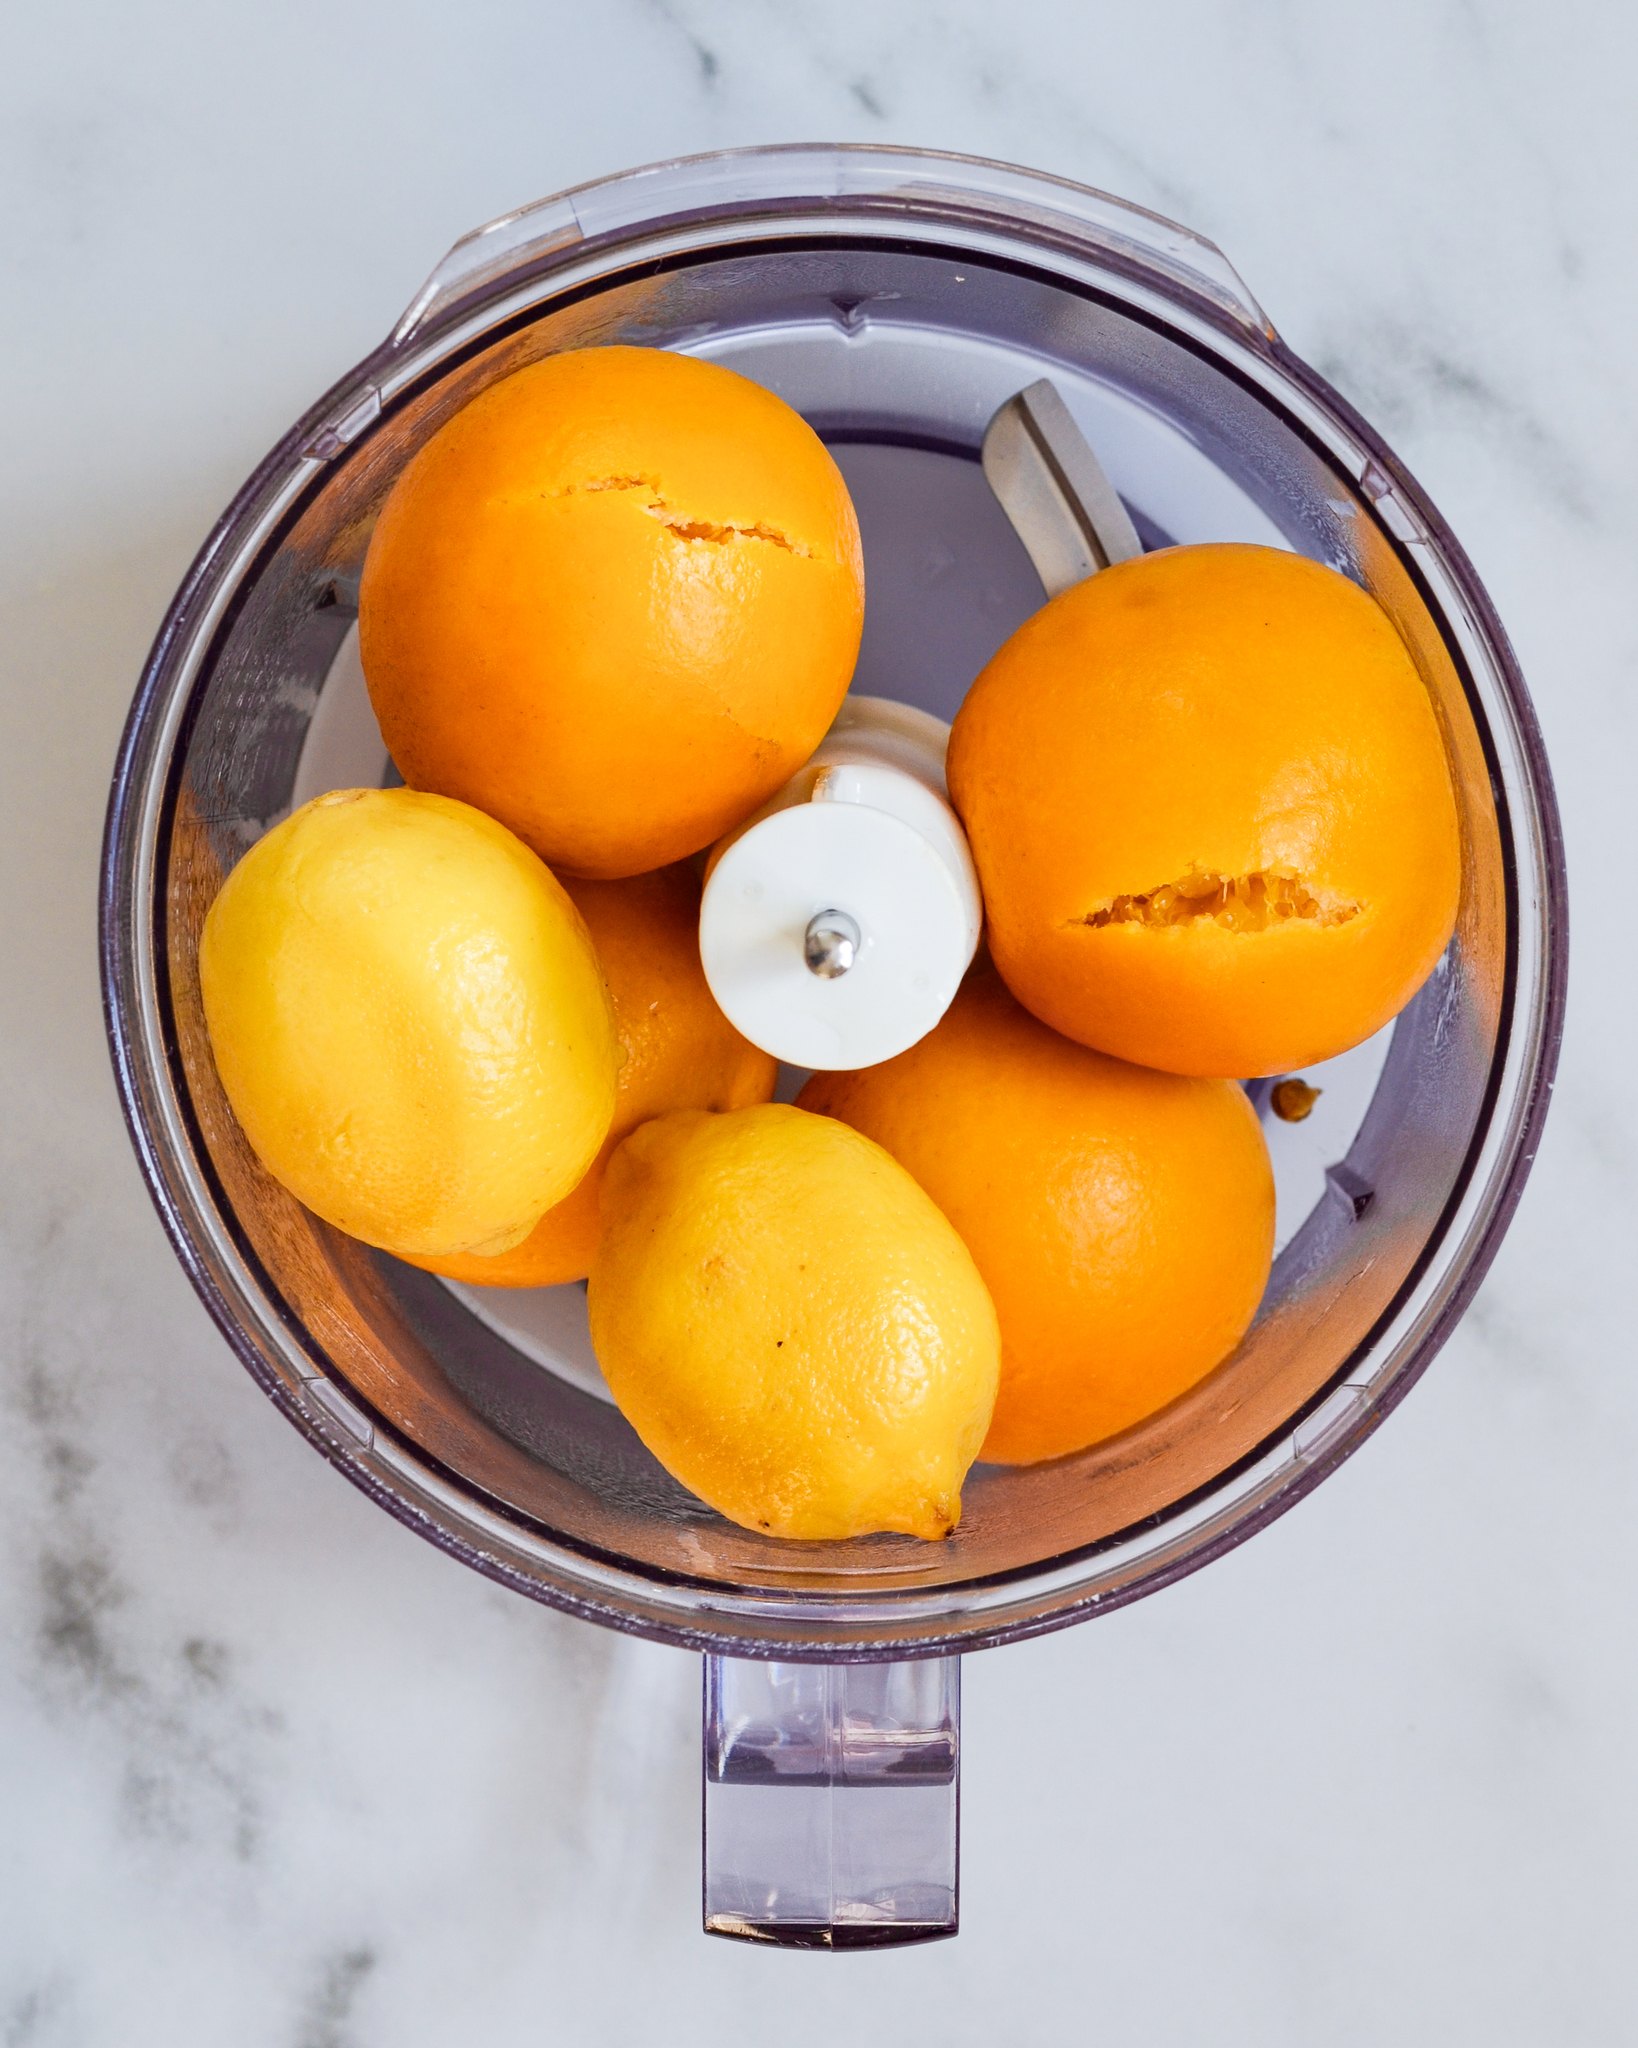 appelsinmarmelade med citron